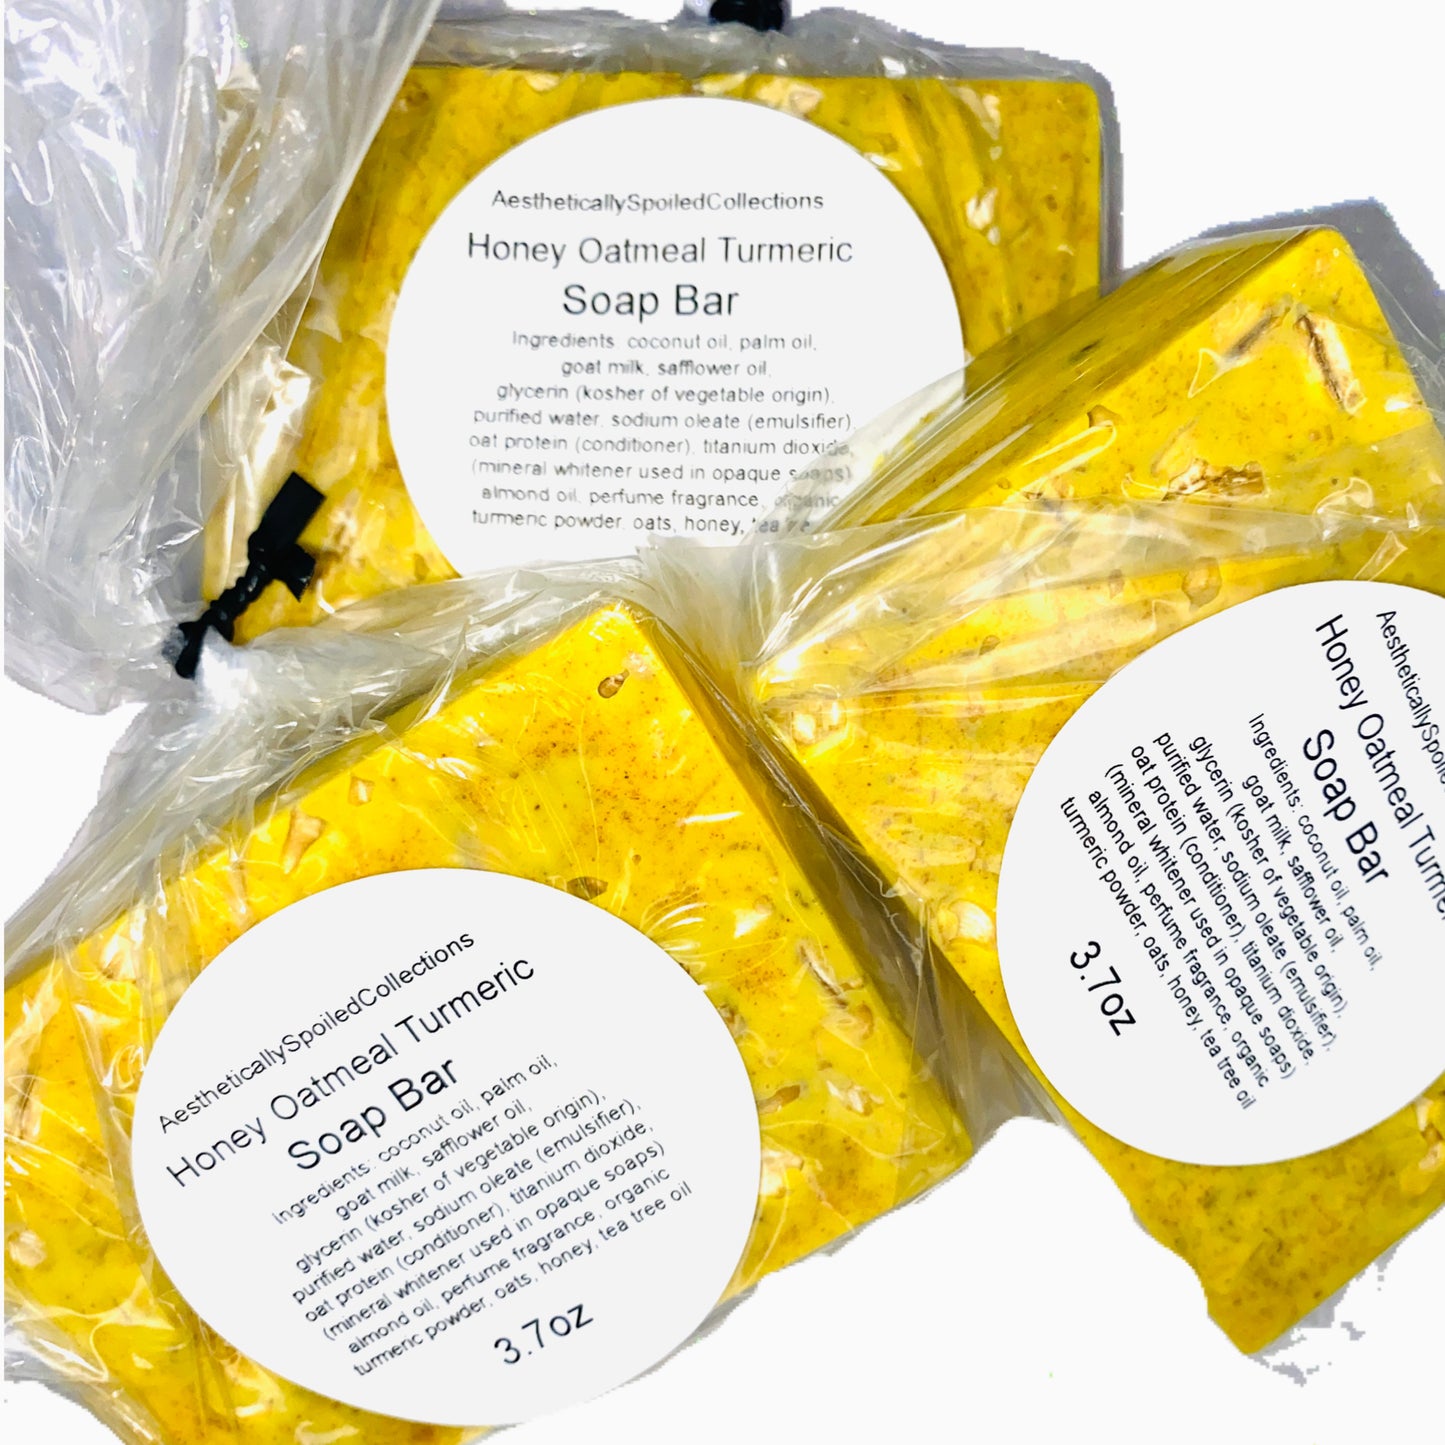 Honey Oatmeal Turmeric soap bar